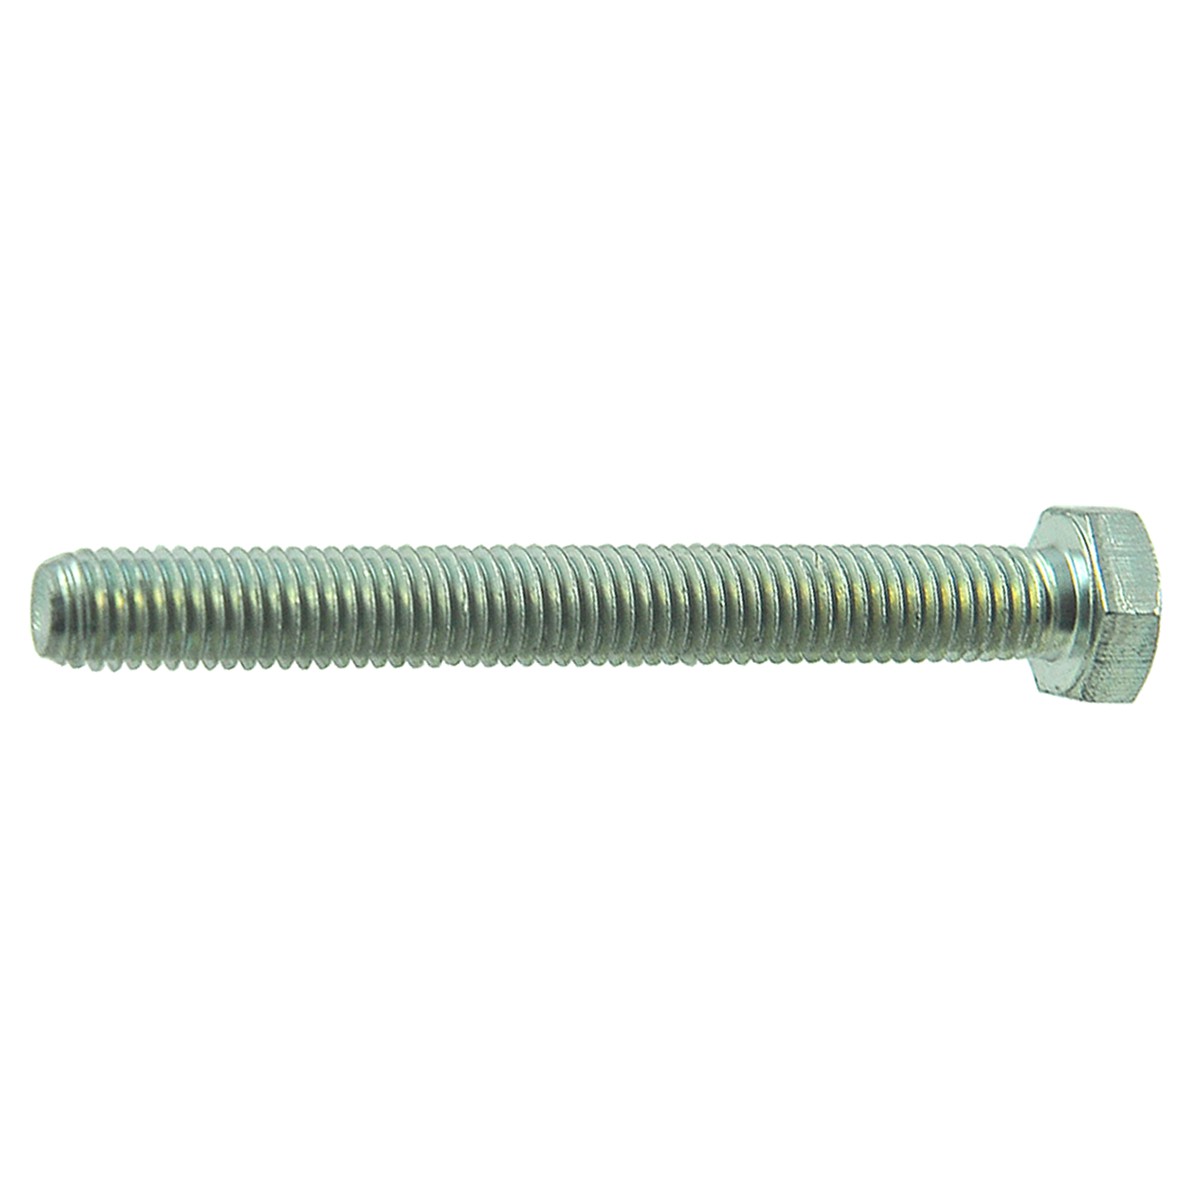 Tensioner bolt / M8 x 70 mm / Iseki KL110 / S0933-M08-070